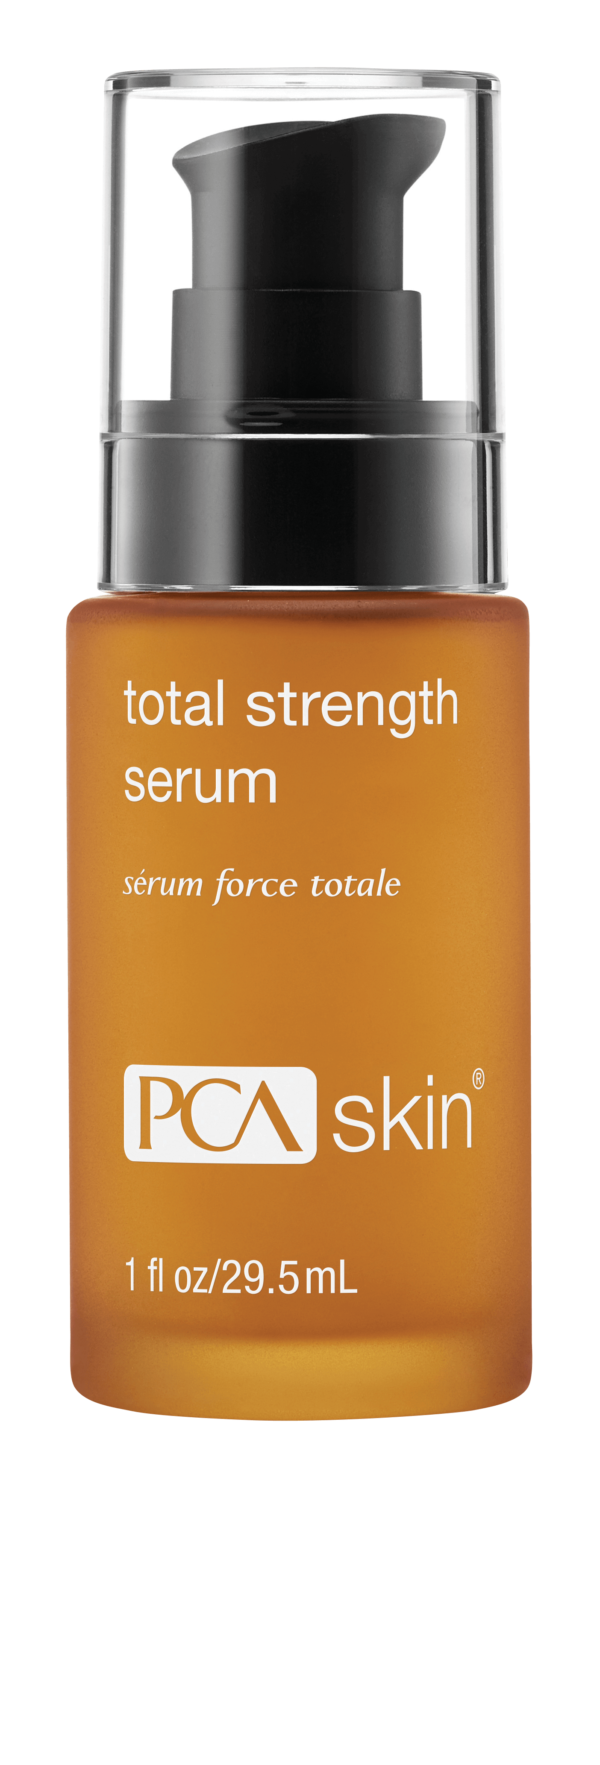 PCA_Skin_Total_Strength_Serum